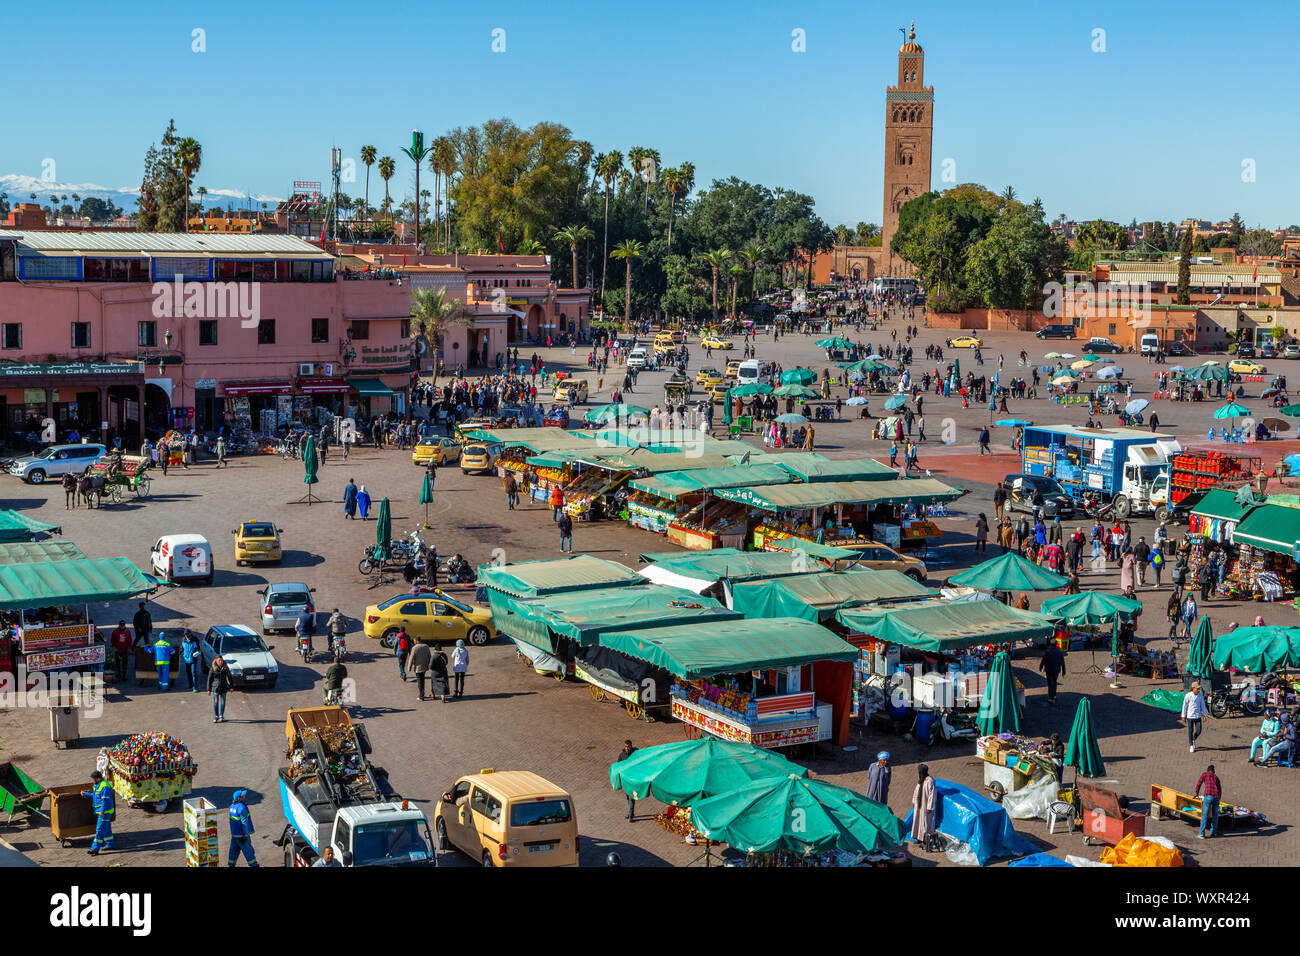 La Moschea di Koutoubia è Marrakech il più famoso punto di riferimento con i suoi 70 metri di altezza minareto visibile per chilometri in ogni direzione marrakech marocco Foto Stock